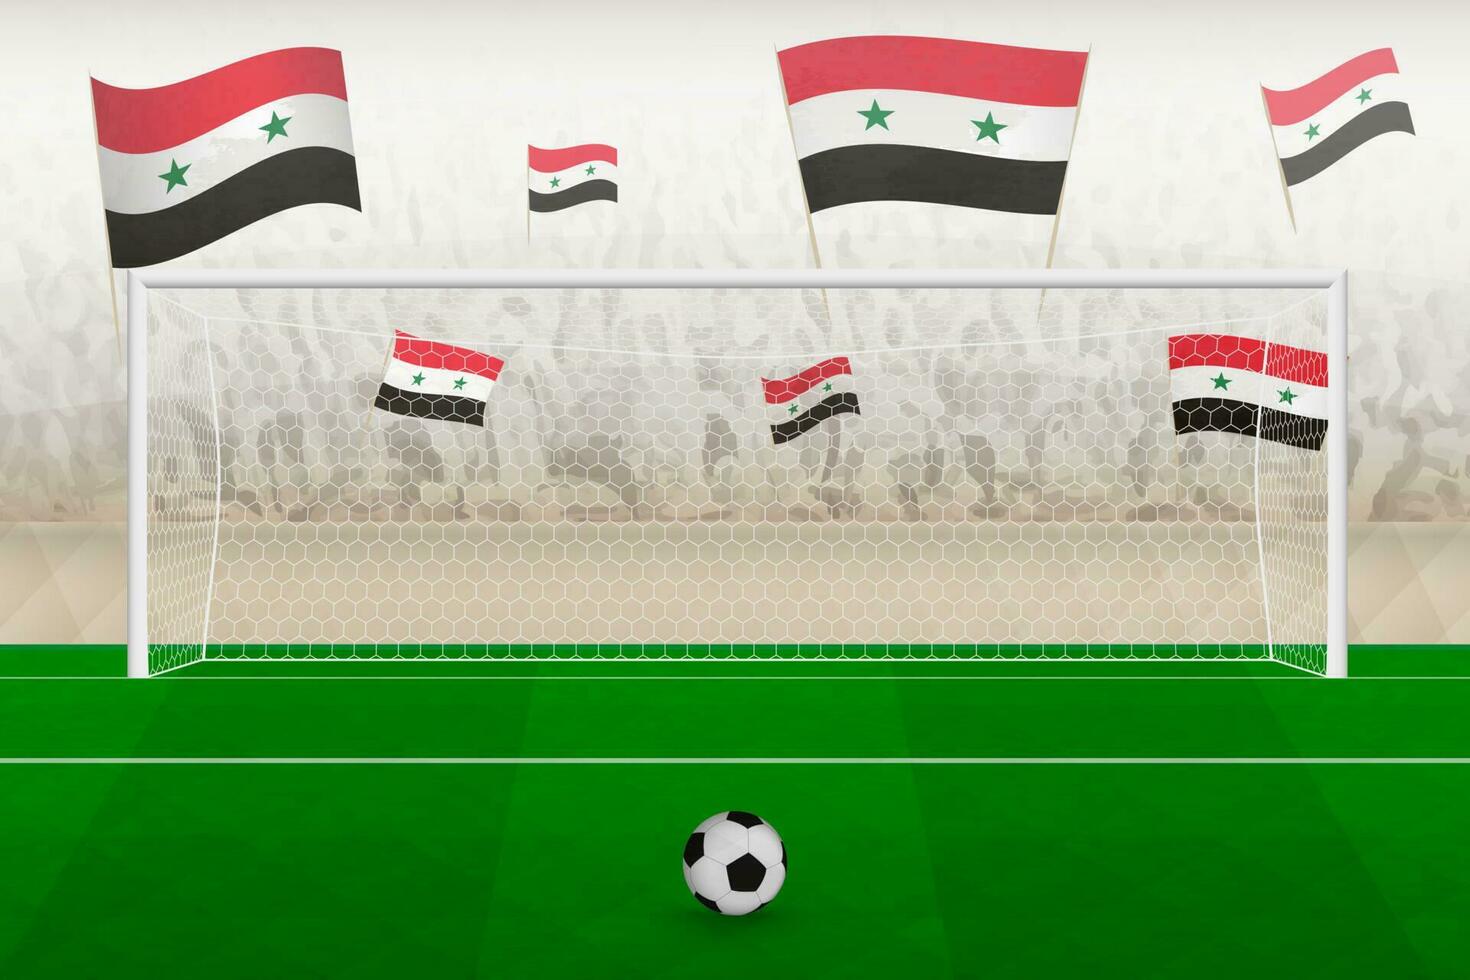 Syrië Amerikaans voetbal team fans met vlaggen van Syrië juichen Aan stadion, straf trap concept in een voetbal wedstrijd. vector